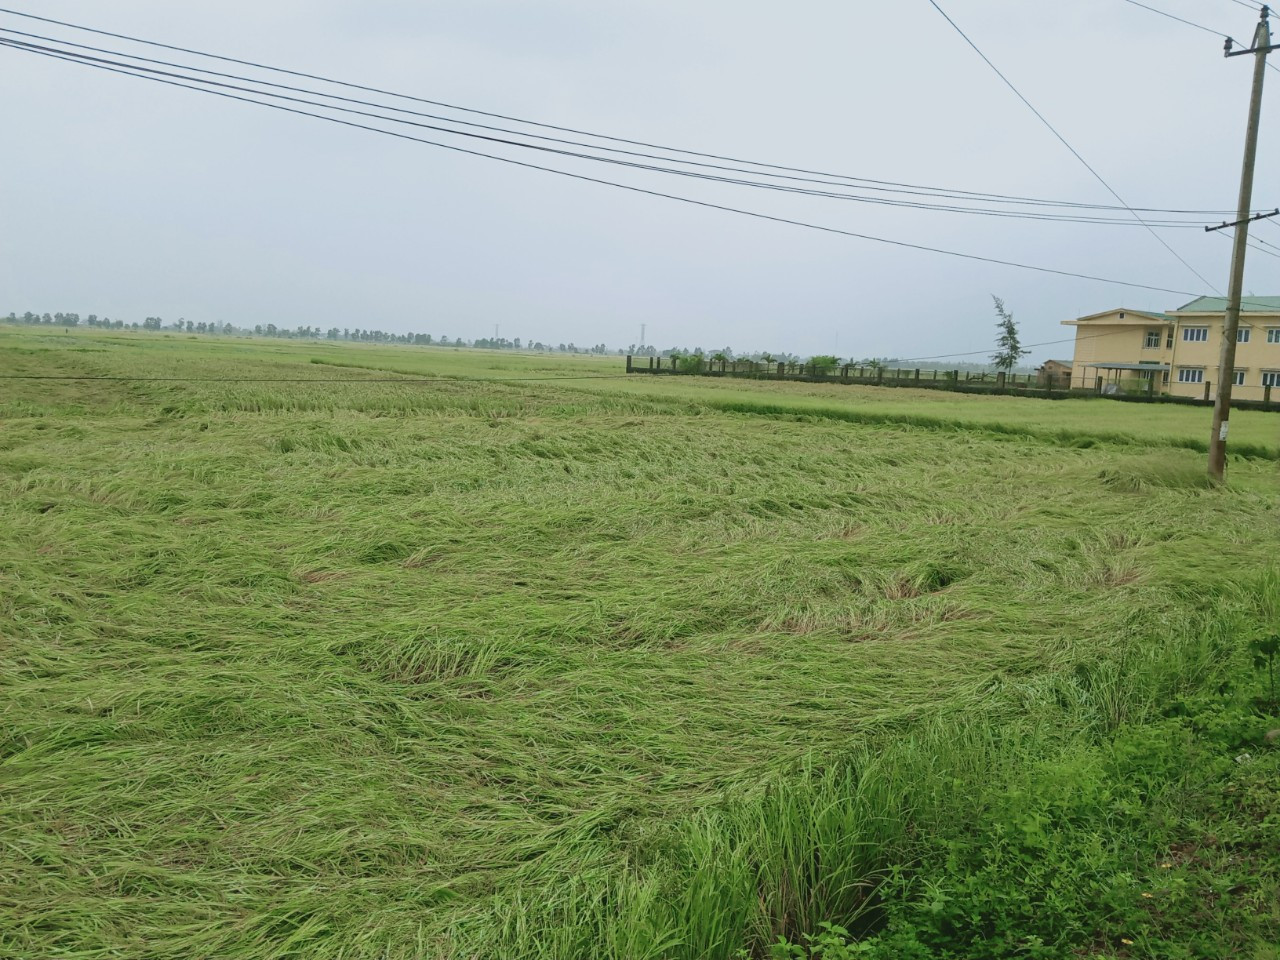 Hơn 10.000ha lúa sản xuất vụ đông xuân 2021 – 2022 tại các tỉnh Quảng Trị, Thừa Thiên - Huế bị đổ ngã.